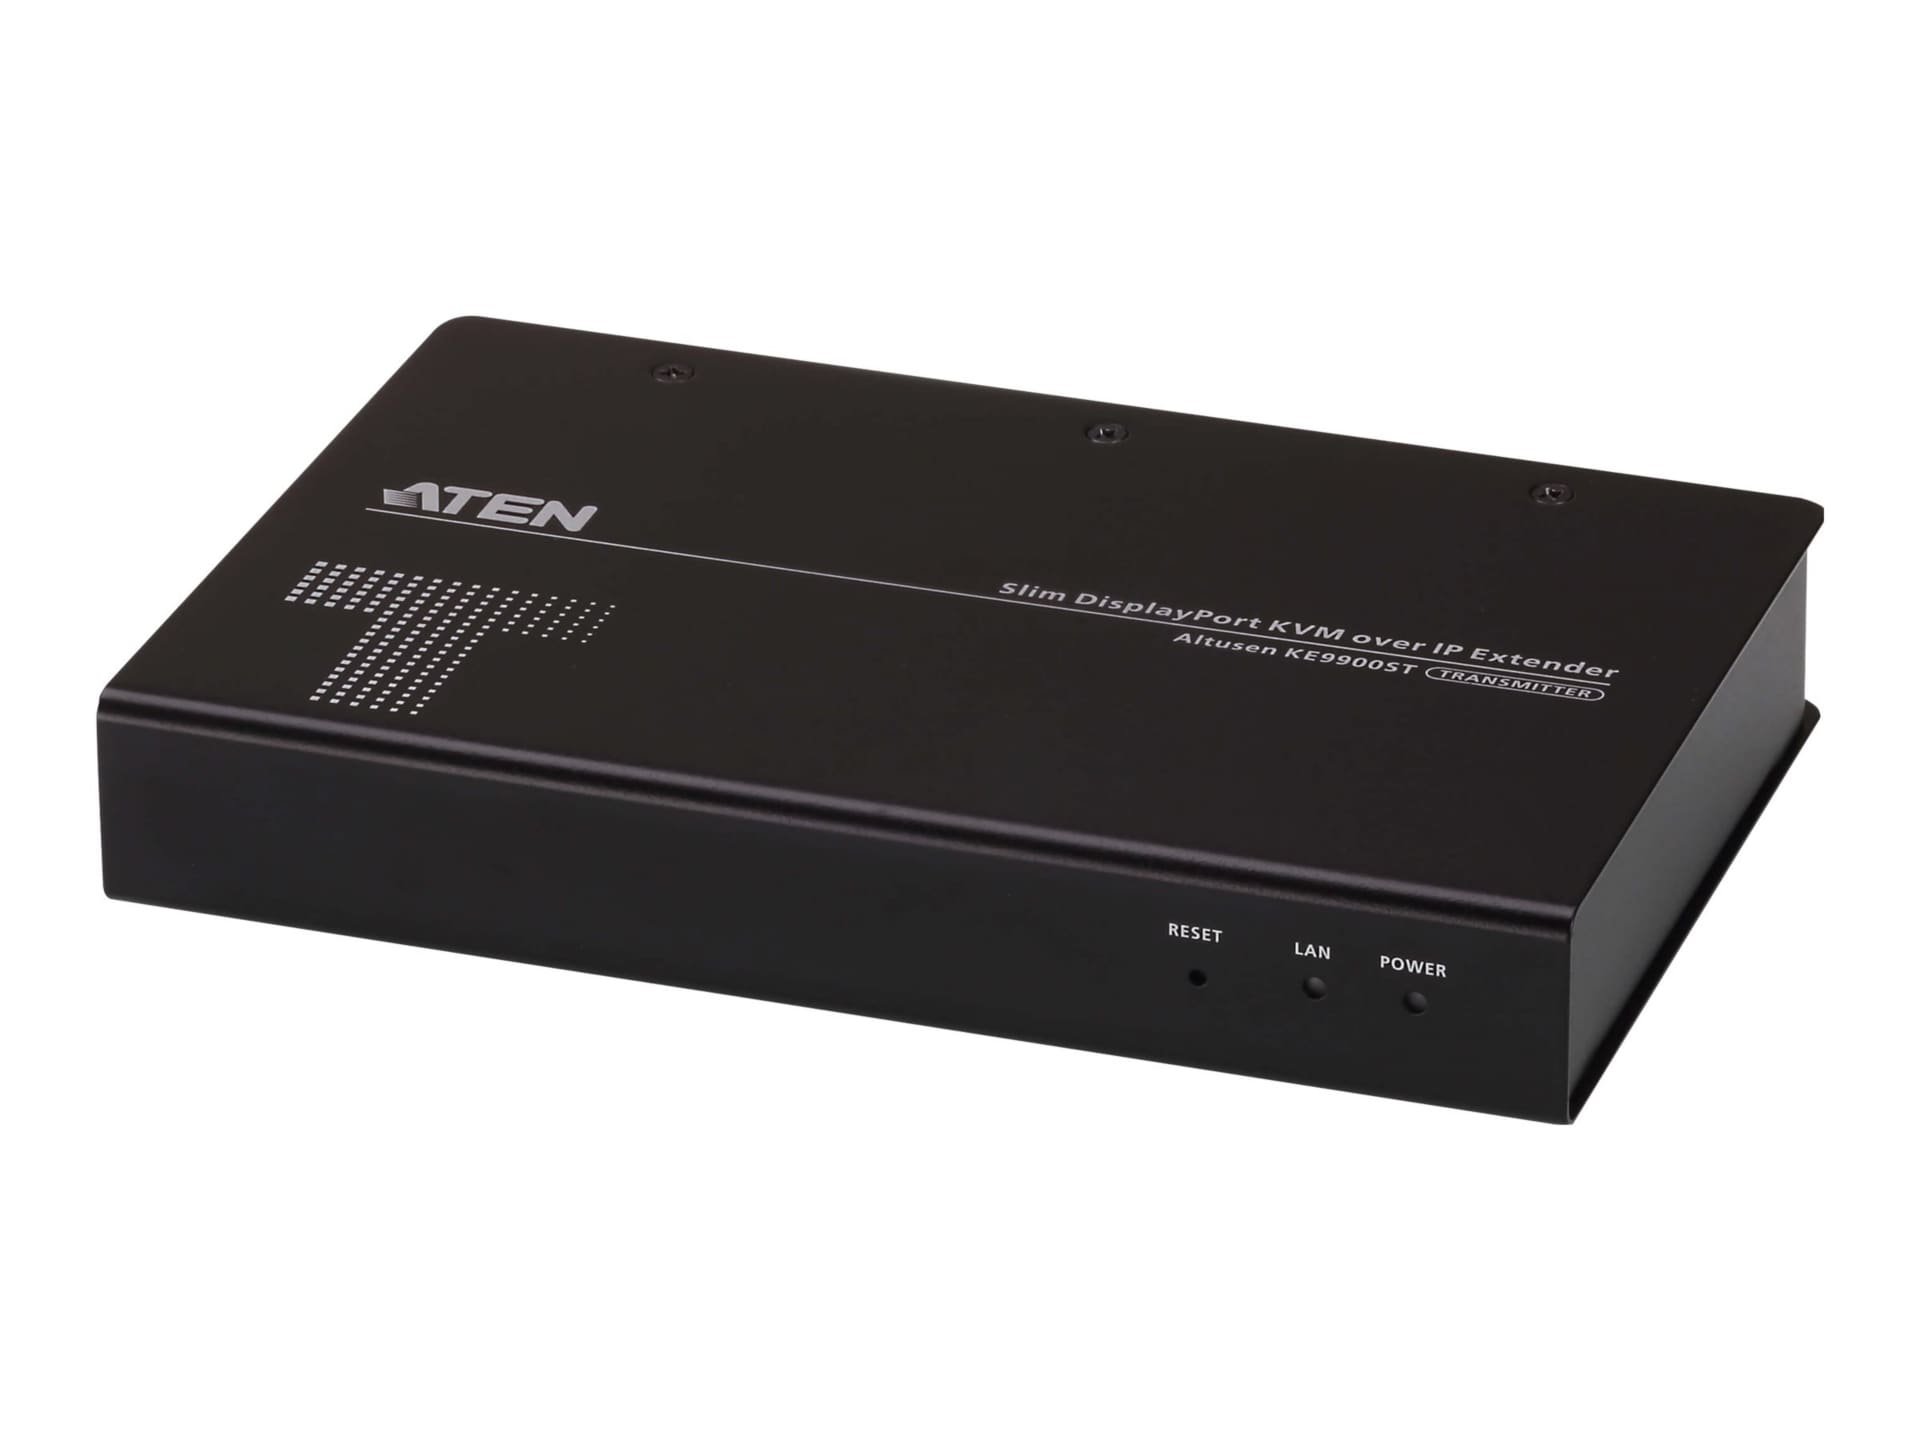 ALTUSEN KE9900ST - KVM / audio / serial / USB extender